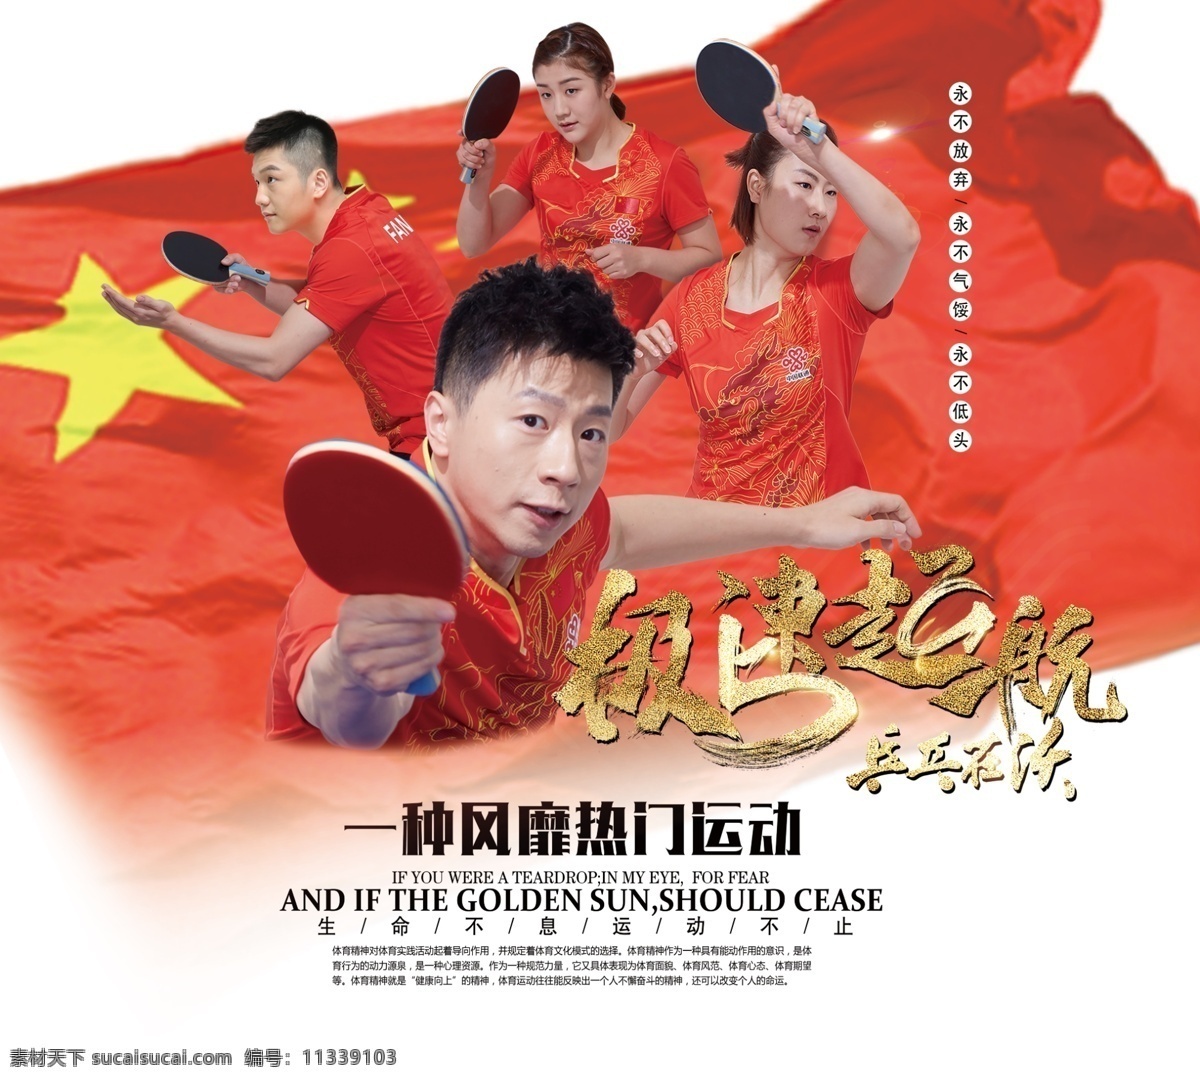 极速起航 乒乓球 中国乒乓球 乒乓球运动 中国小球 热门运动